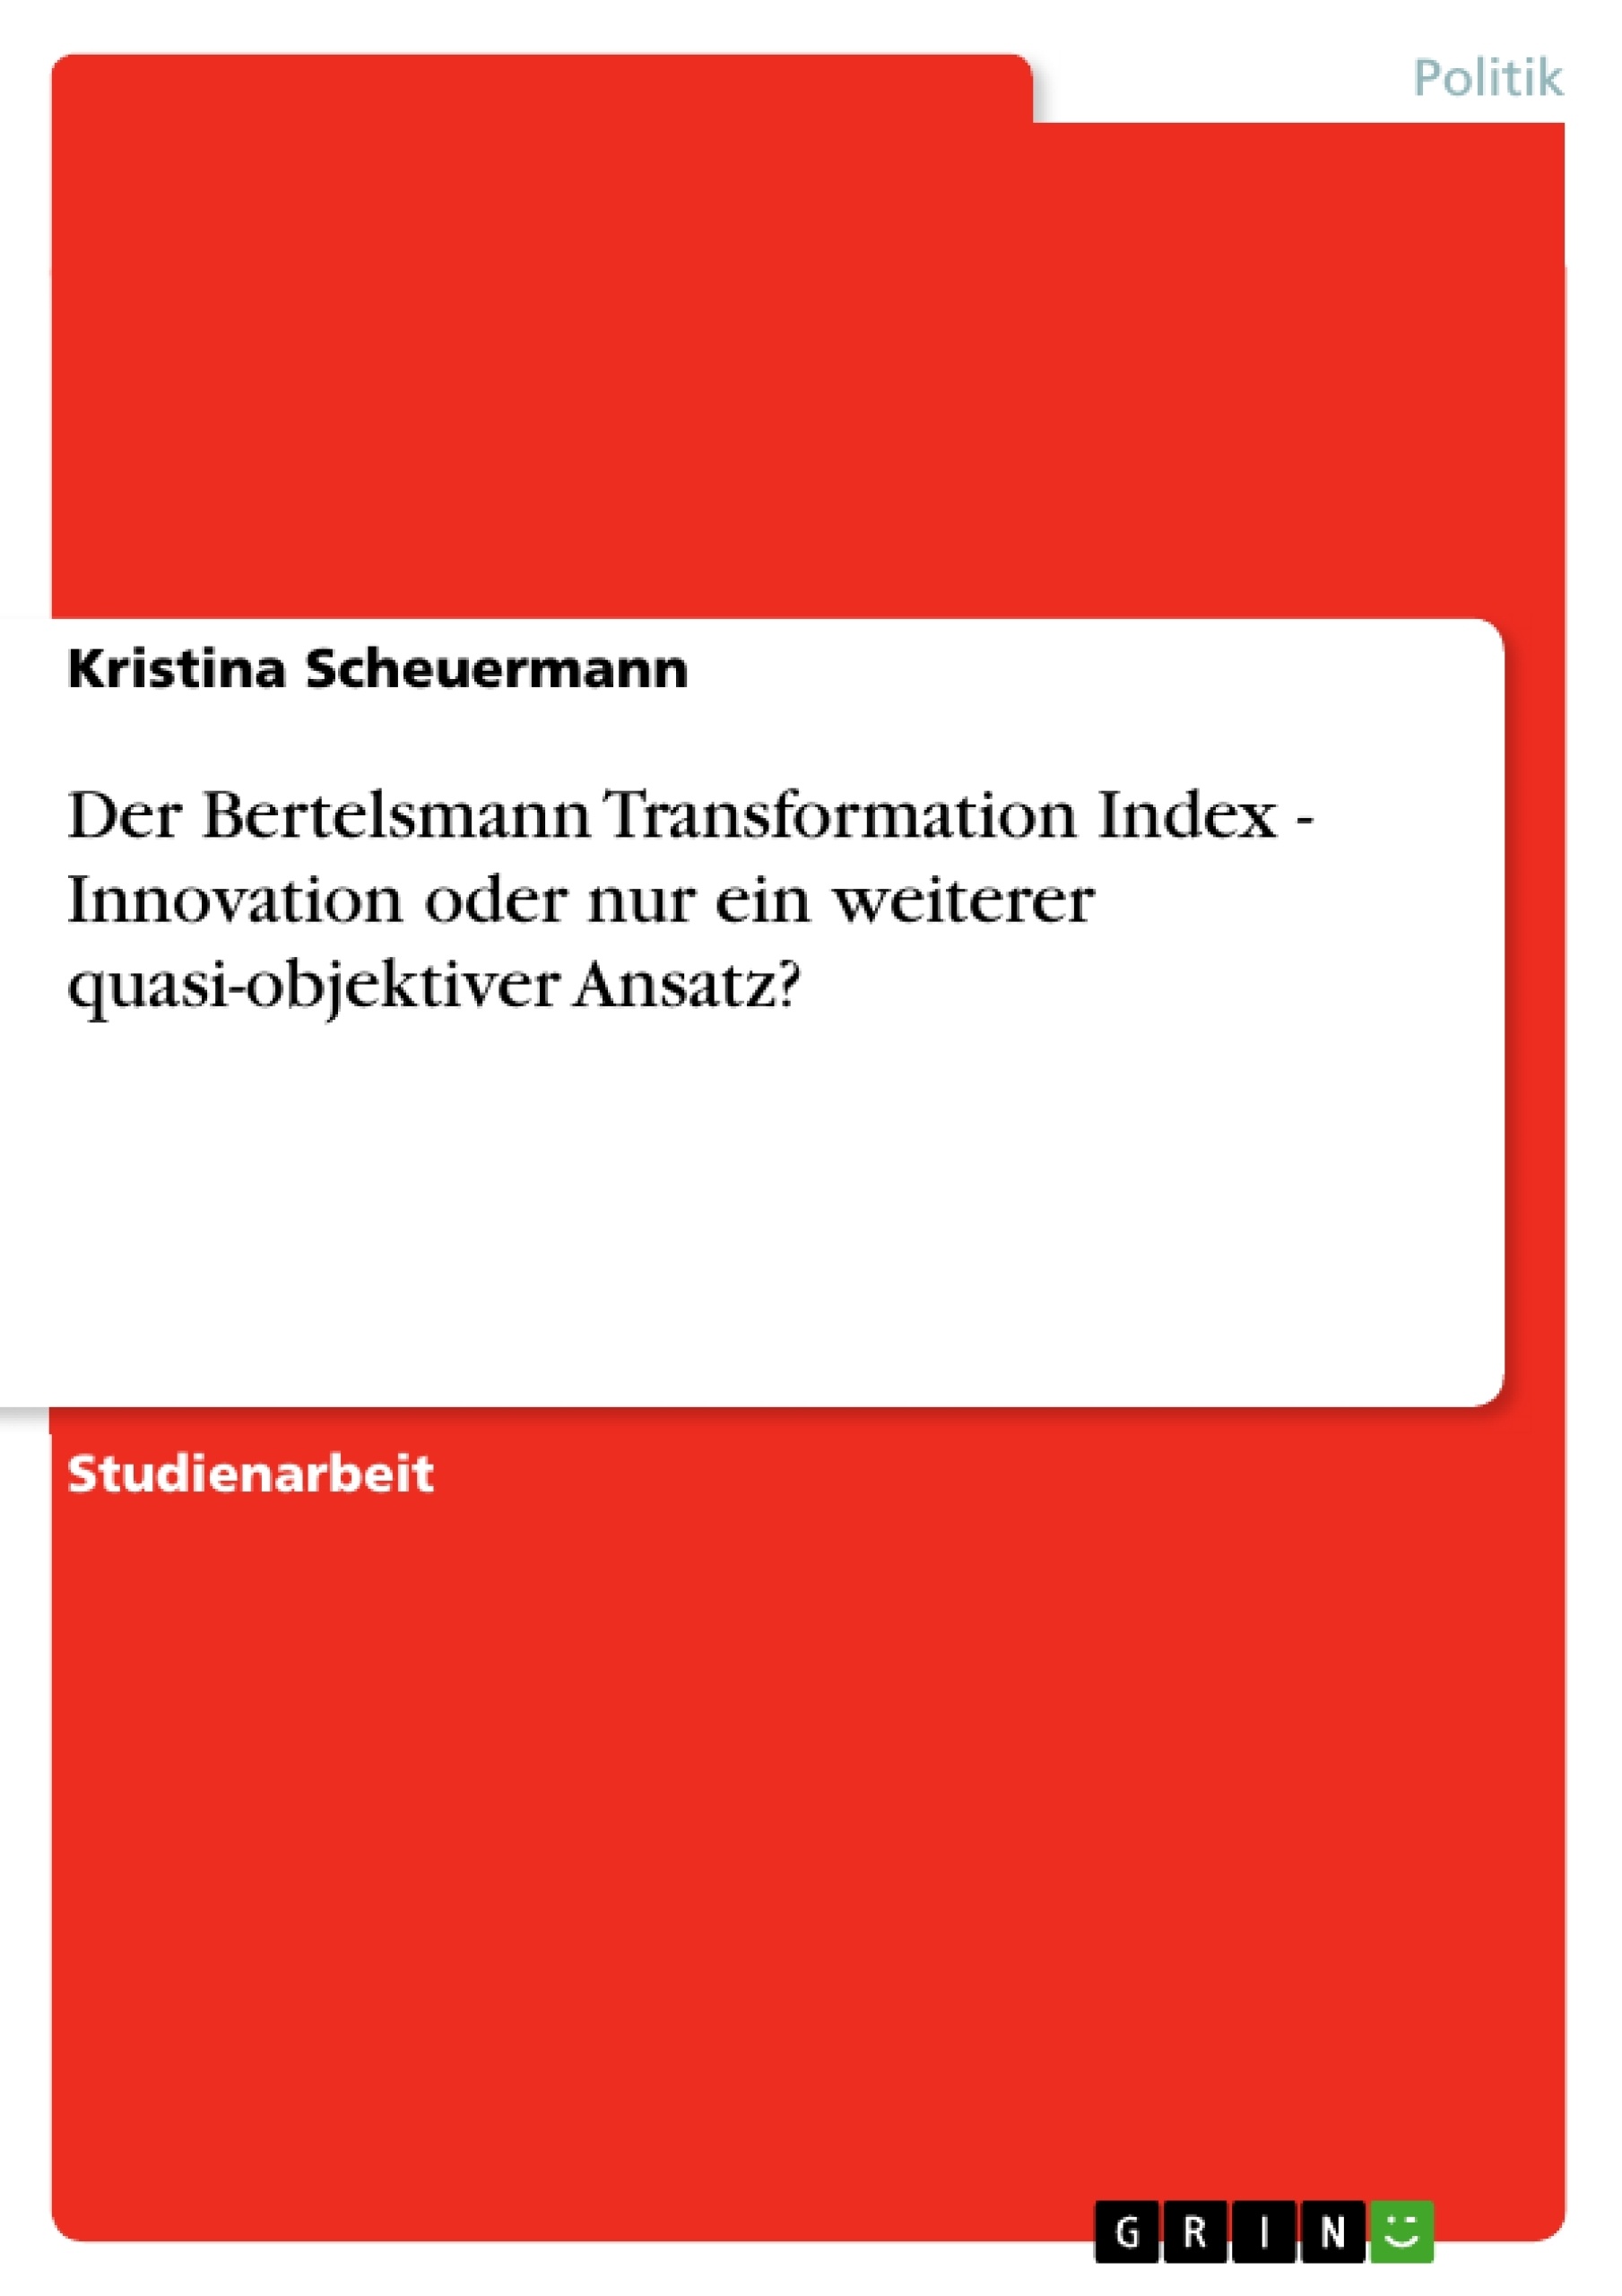 Título: Der Bertelsmann Transformation Index - Innovation oder nur ein weiterer quasi-objektiver Ansatz?